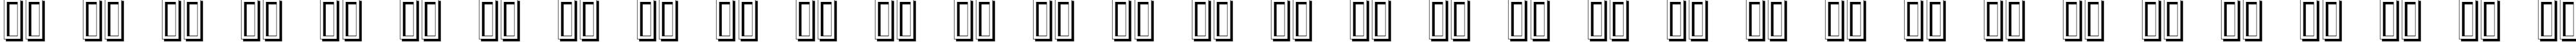 Пример написания русского алфавита шрифтом Erbar Initialen Shadow